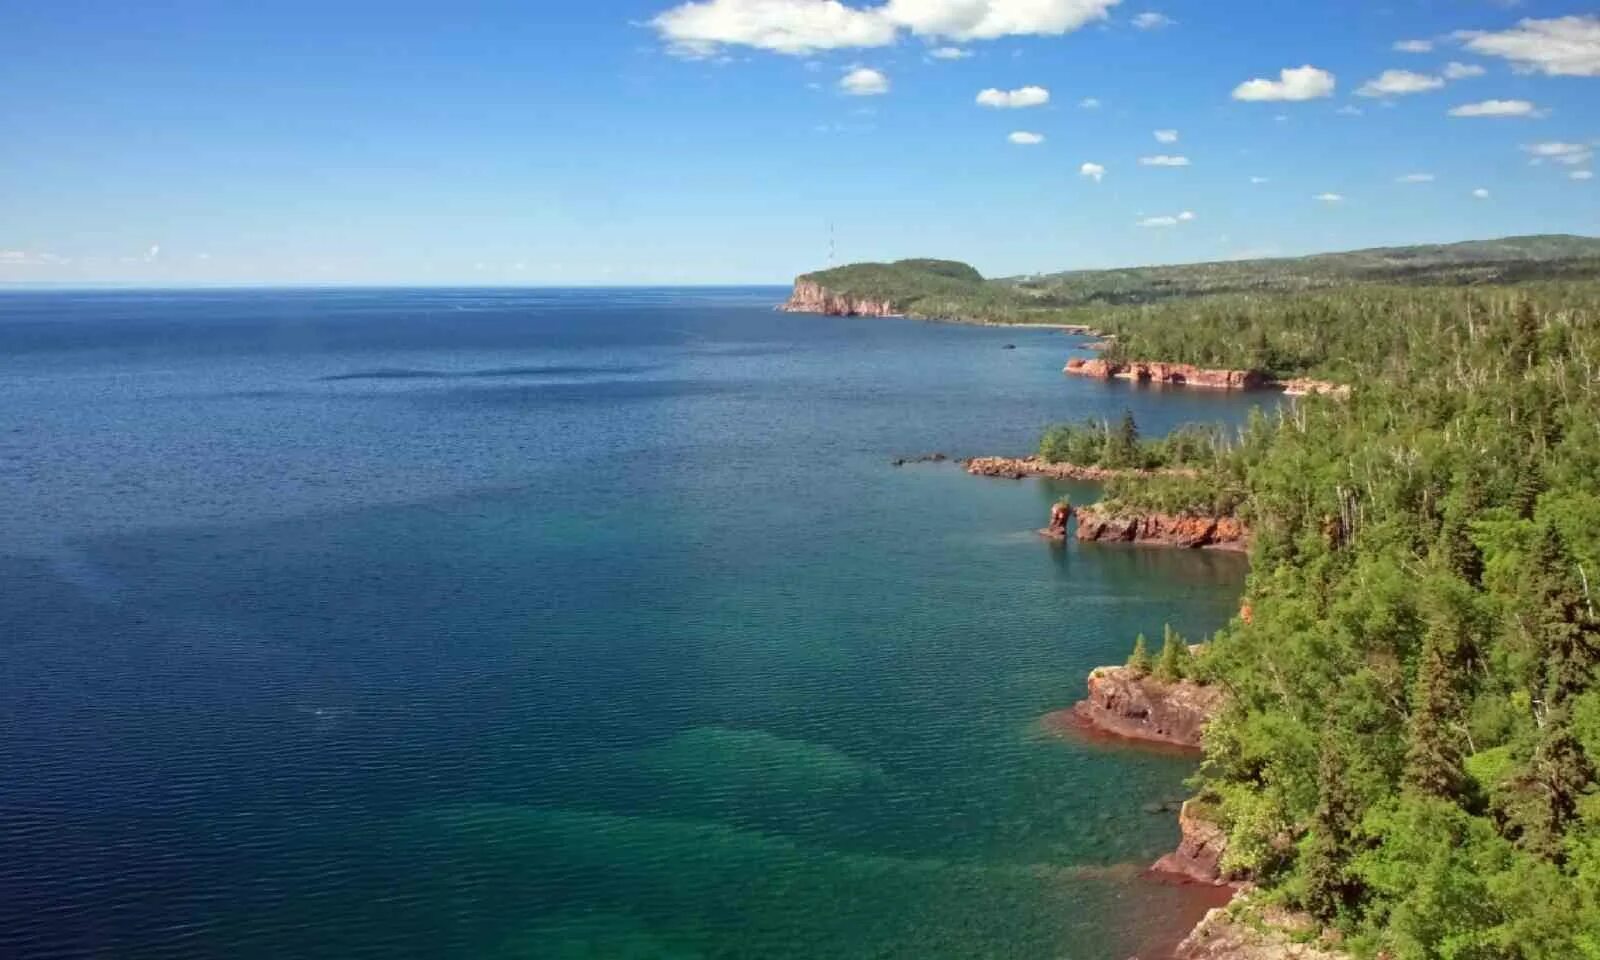 Озеро верхнее объем воды. Верхнее озеро (Lake Superior). Канада. Озеро Гурон Северная Америка. Великие американские озёра верхнее Гурон Мичиган Эри Онтарио. Озеро Супериор США.